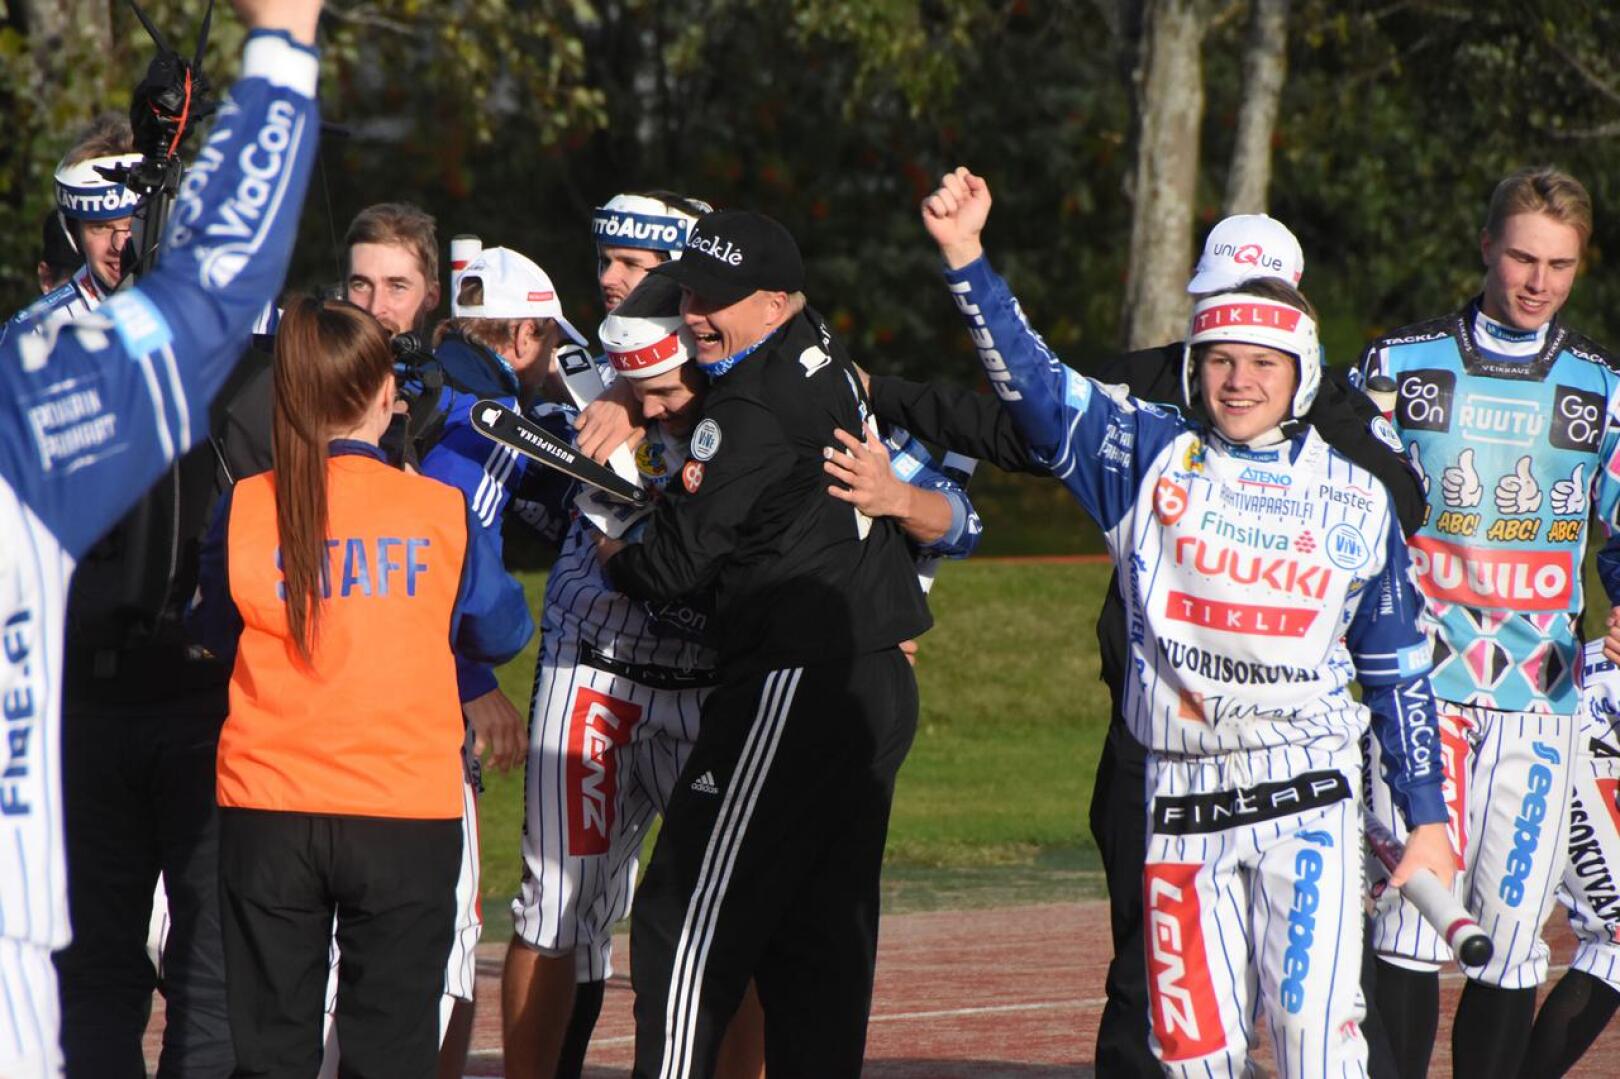 Toinen välierä päättyi Vedon juhliin hurjan nousun jälkeen. Pelinjohtaja Markku Hylkilä ehti kolmospesälle rutistamaan ratkaisija Matias Rinta-ahoa.